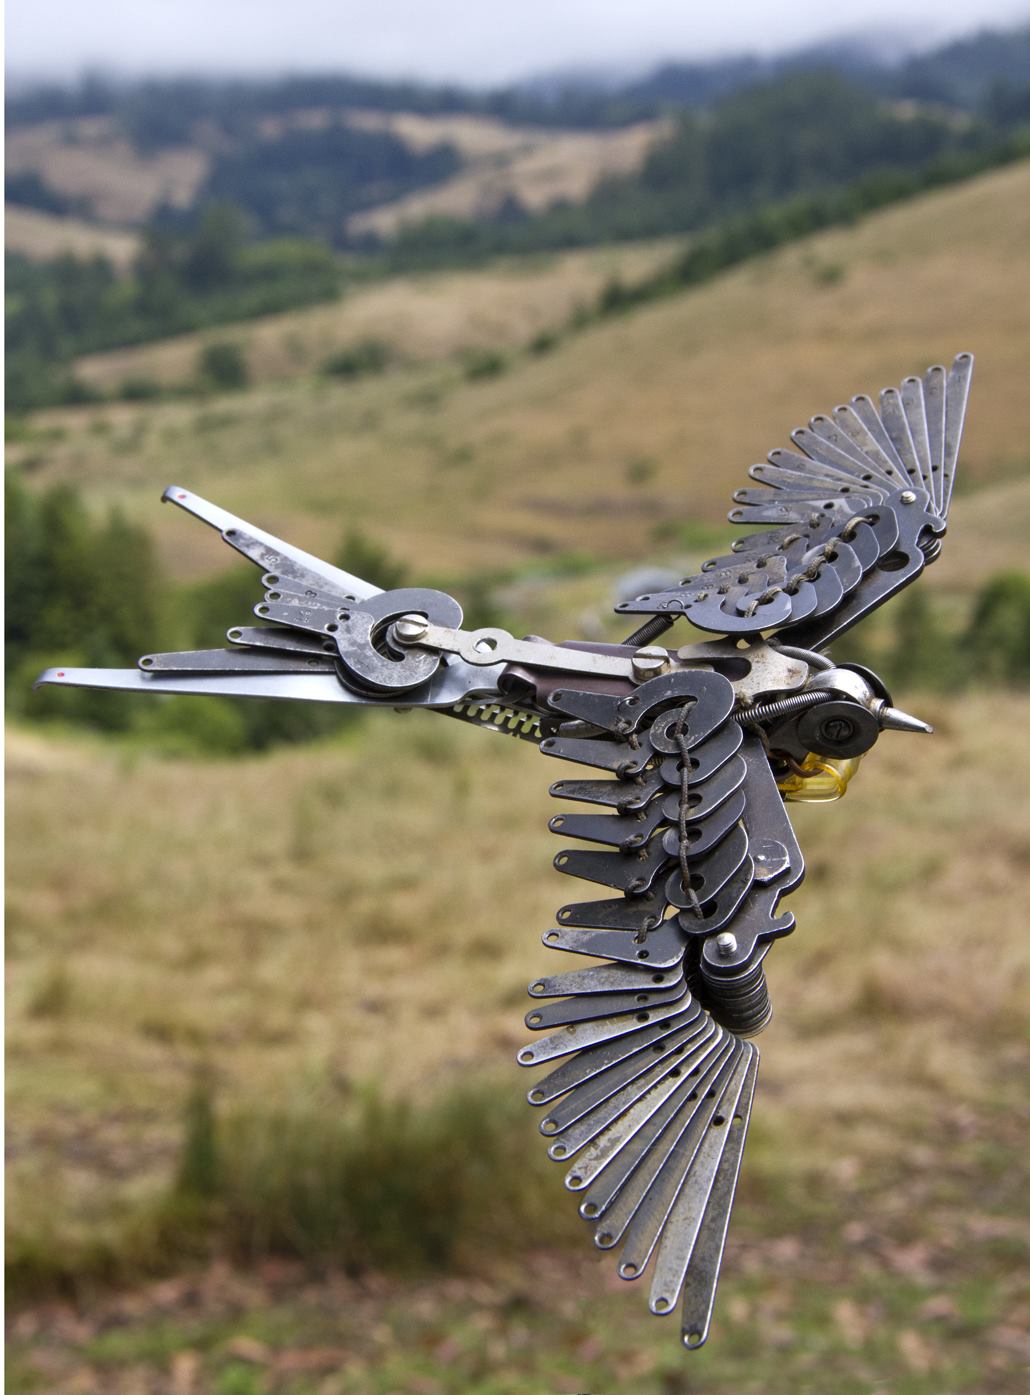 Jeremy Mayer – Bird – Typewriter assemblage sculptures